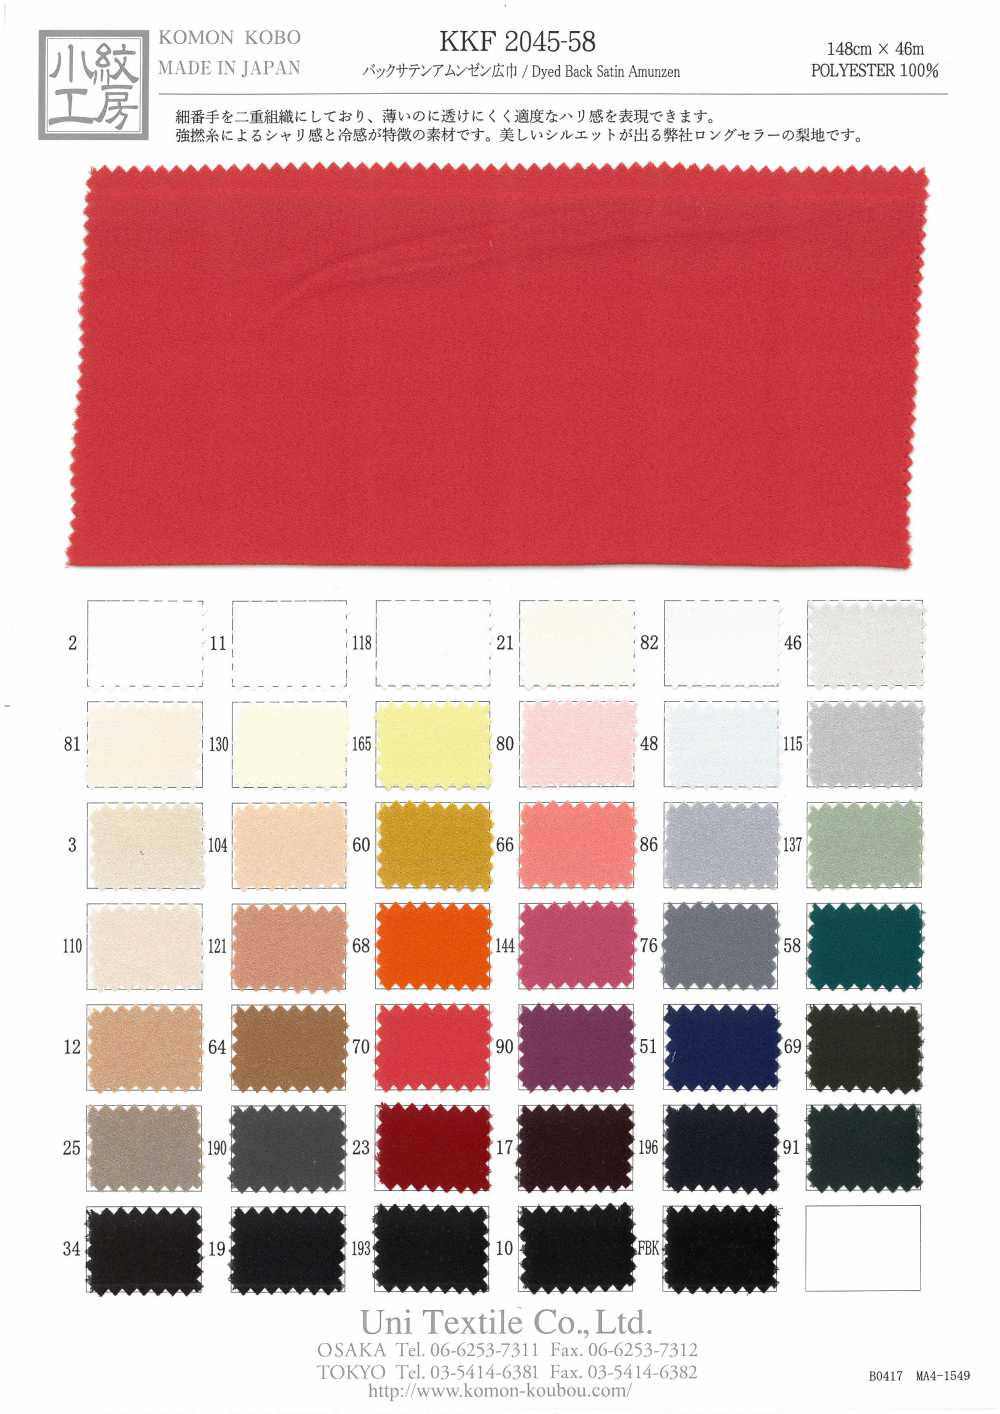 KKF2045-58 Dos Satin Rugosité Surface Large Largeur[Fabrication De Textile] Uni Textile